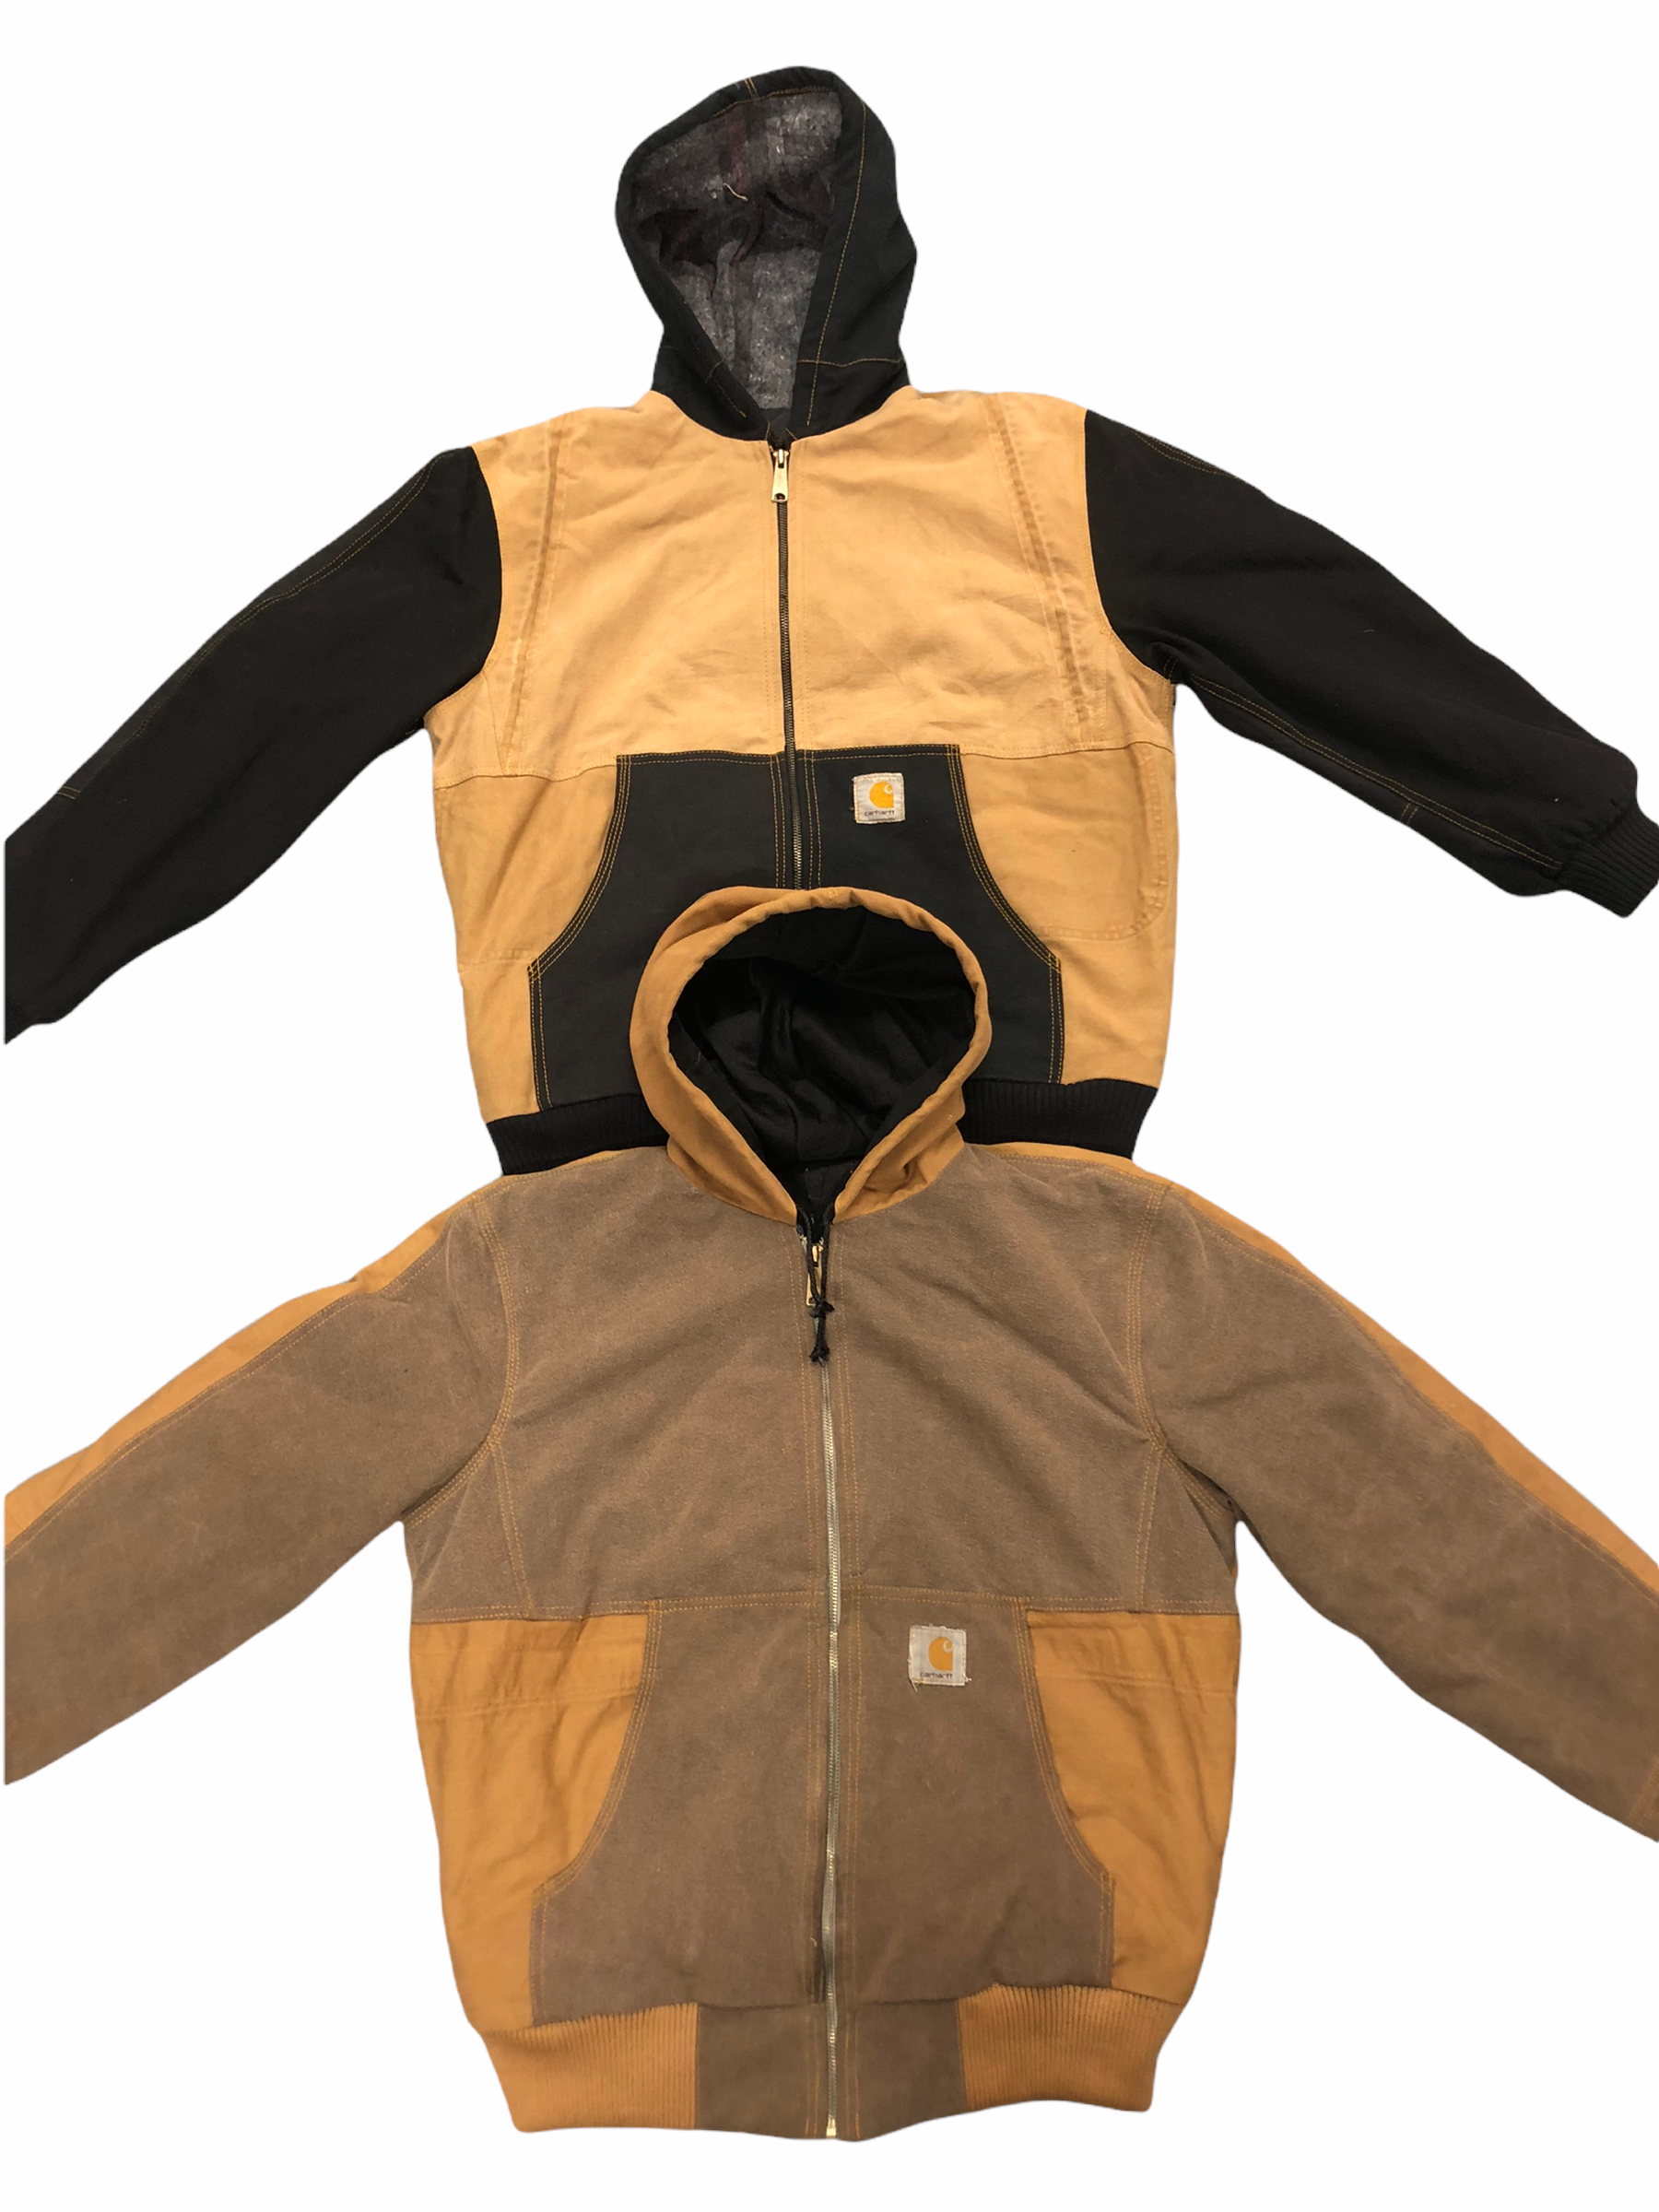 carhartt rework hoodid jacket, Vintage Wholesale Marketplace